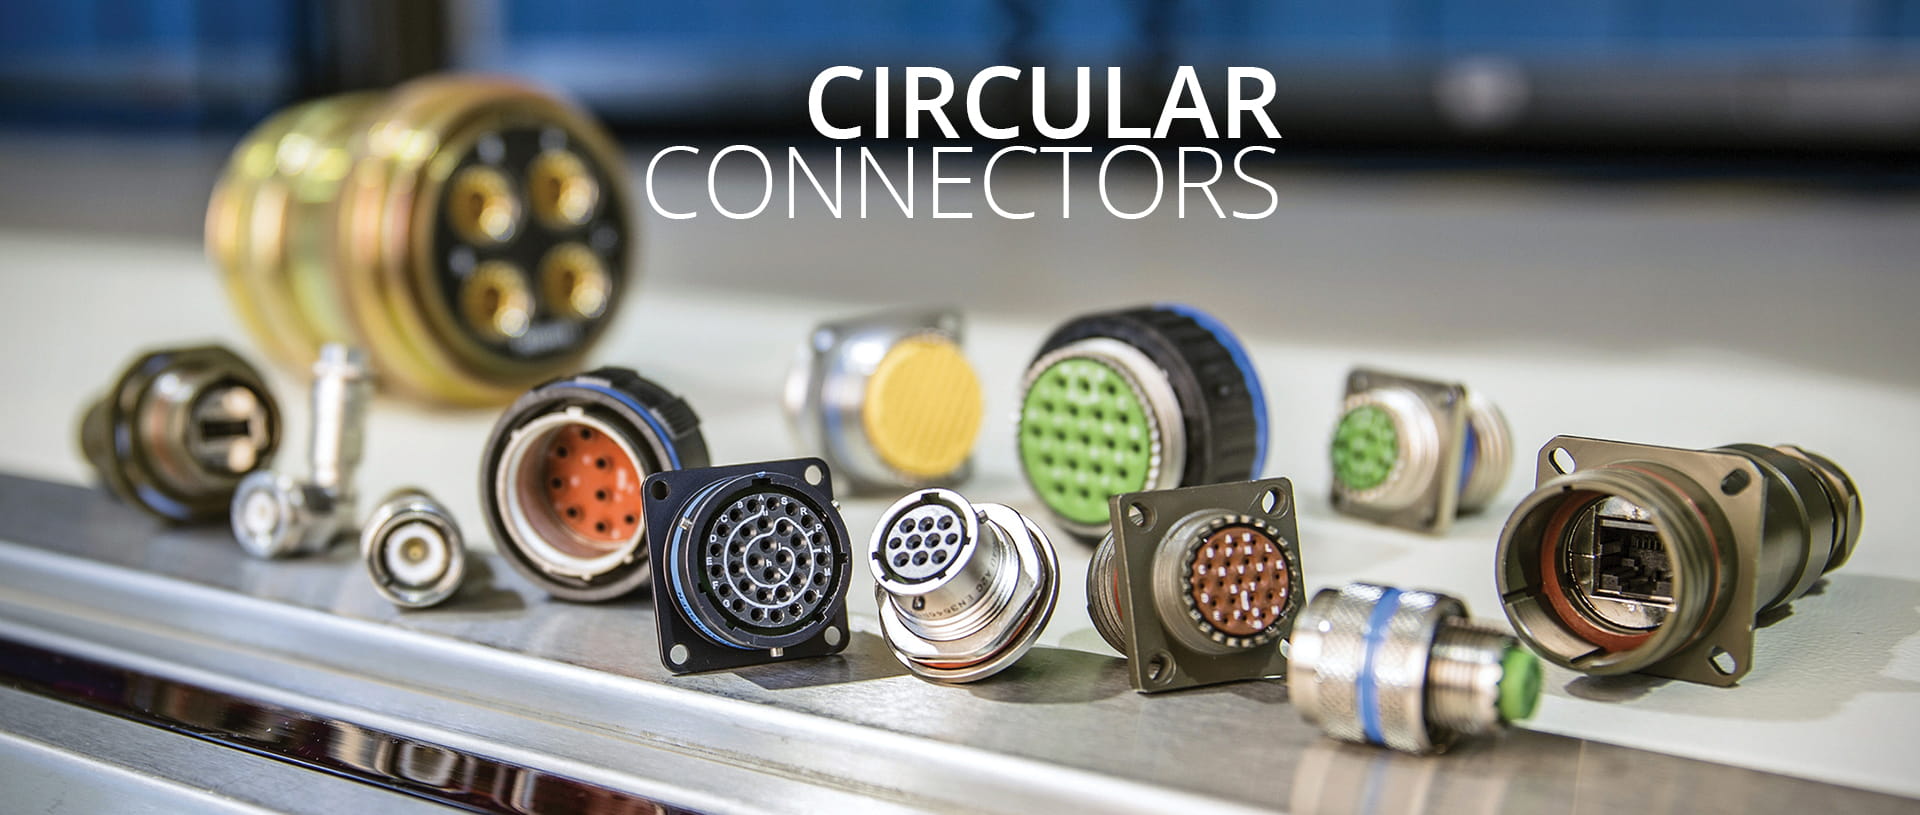 circular connector